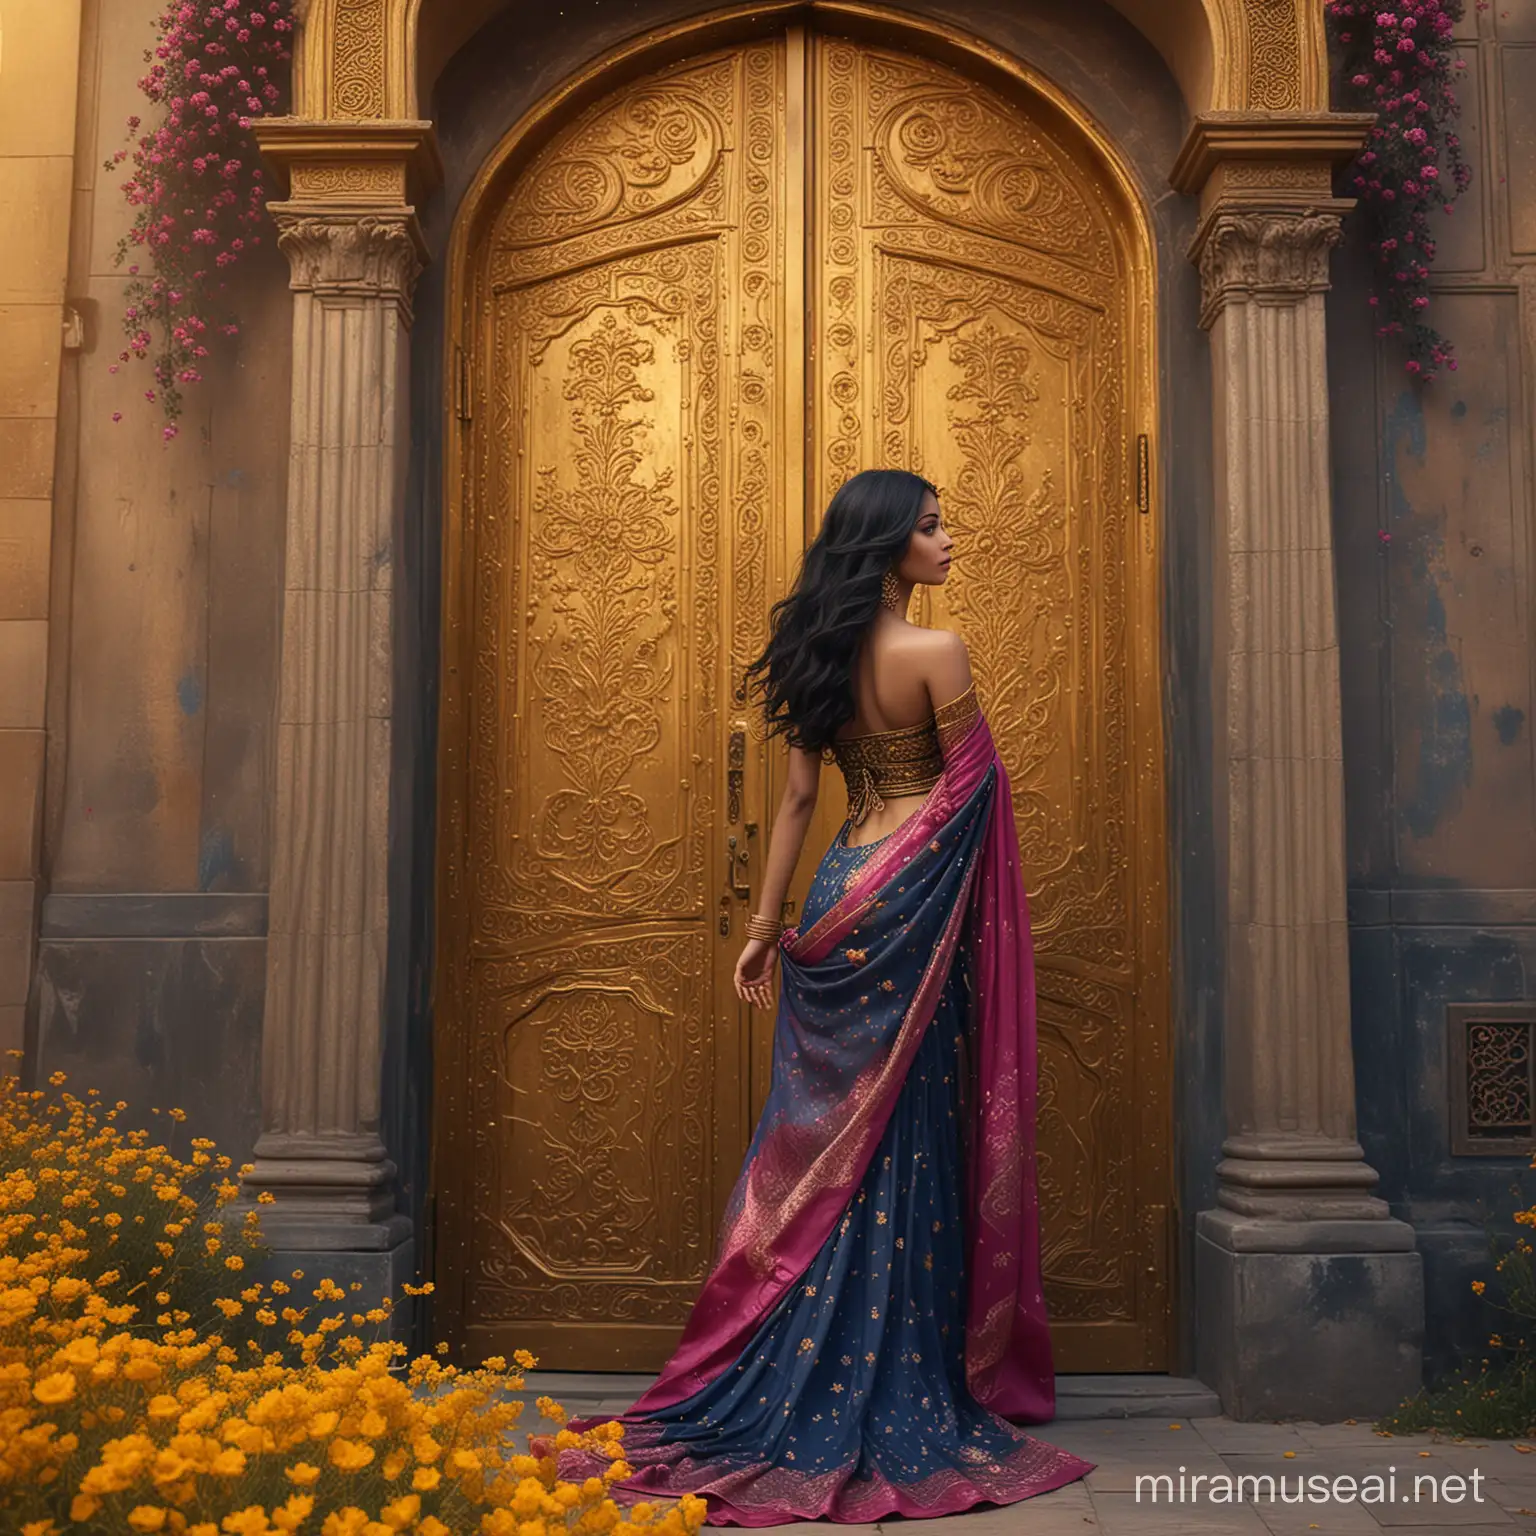 Elegant Woman in Sari Dress Standing under Golden Arabian Door amidst Dark Yellow Flowers